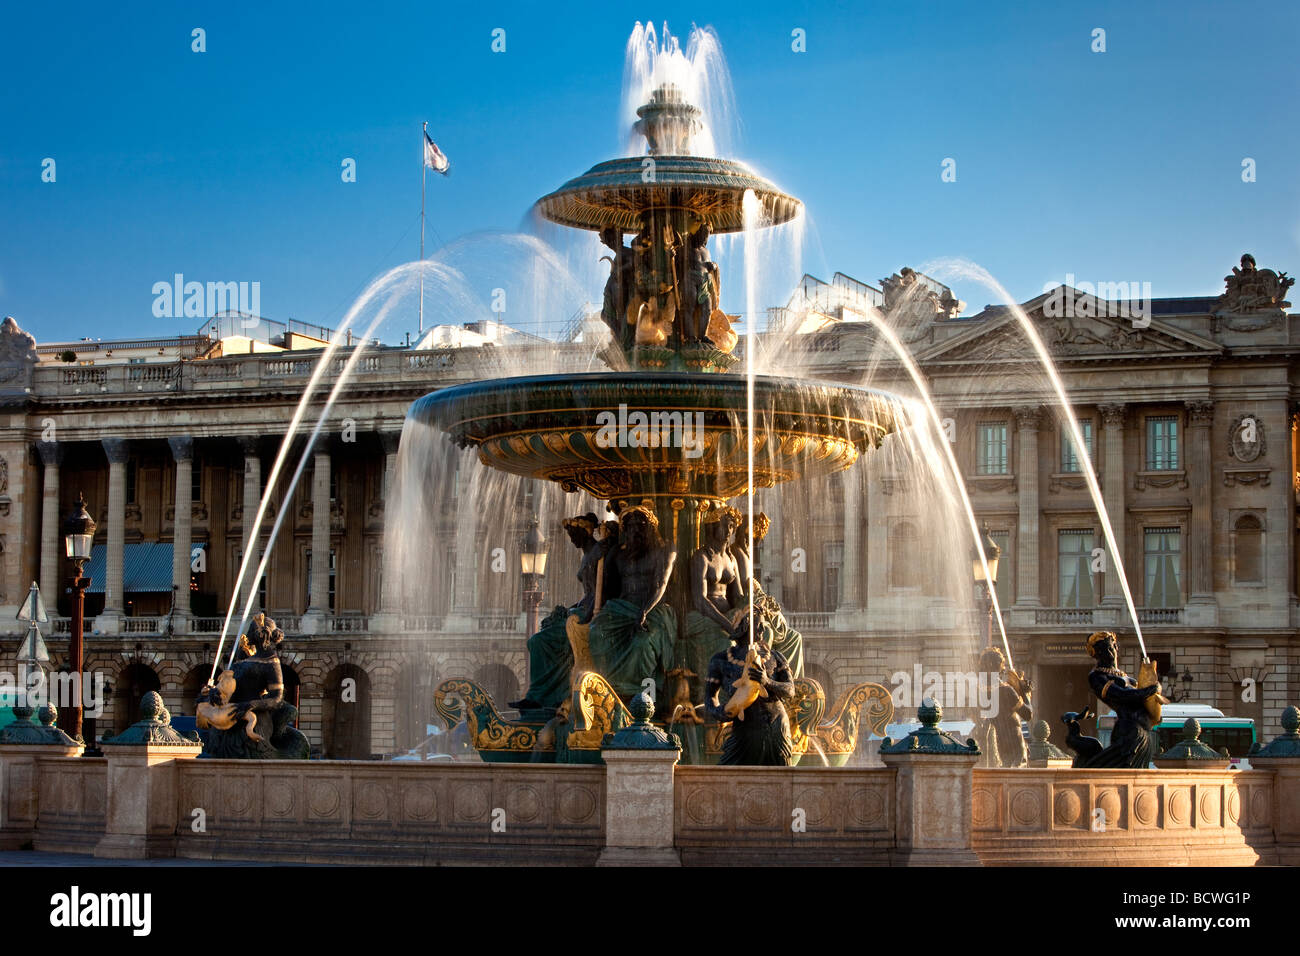 Fontaine des Fleuves - Fountain of Rivers at Place de la Concorde, Paris France Stock Photo